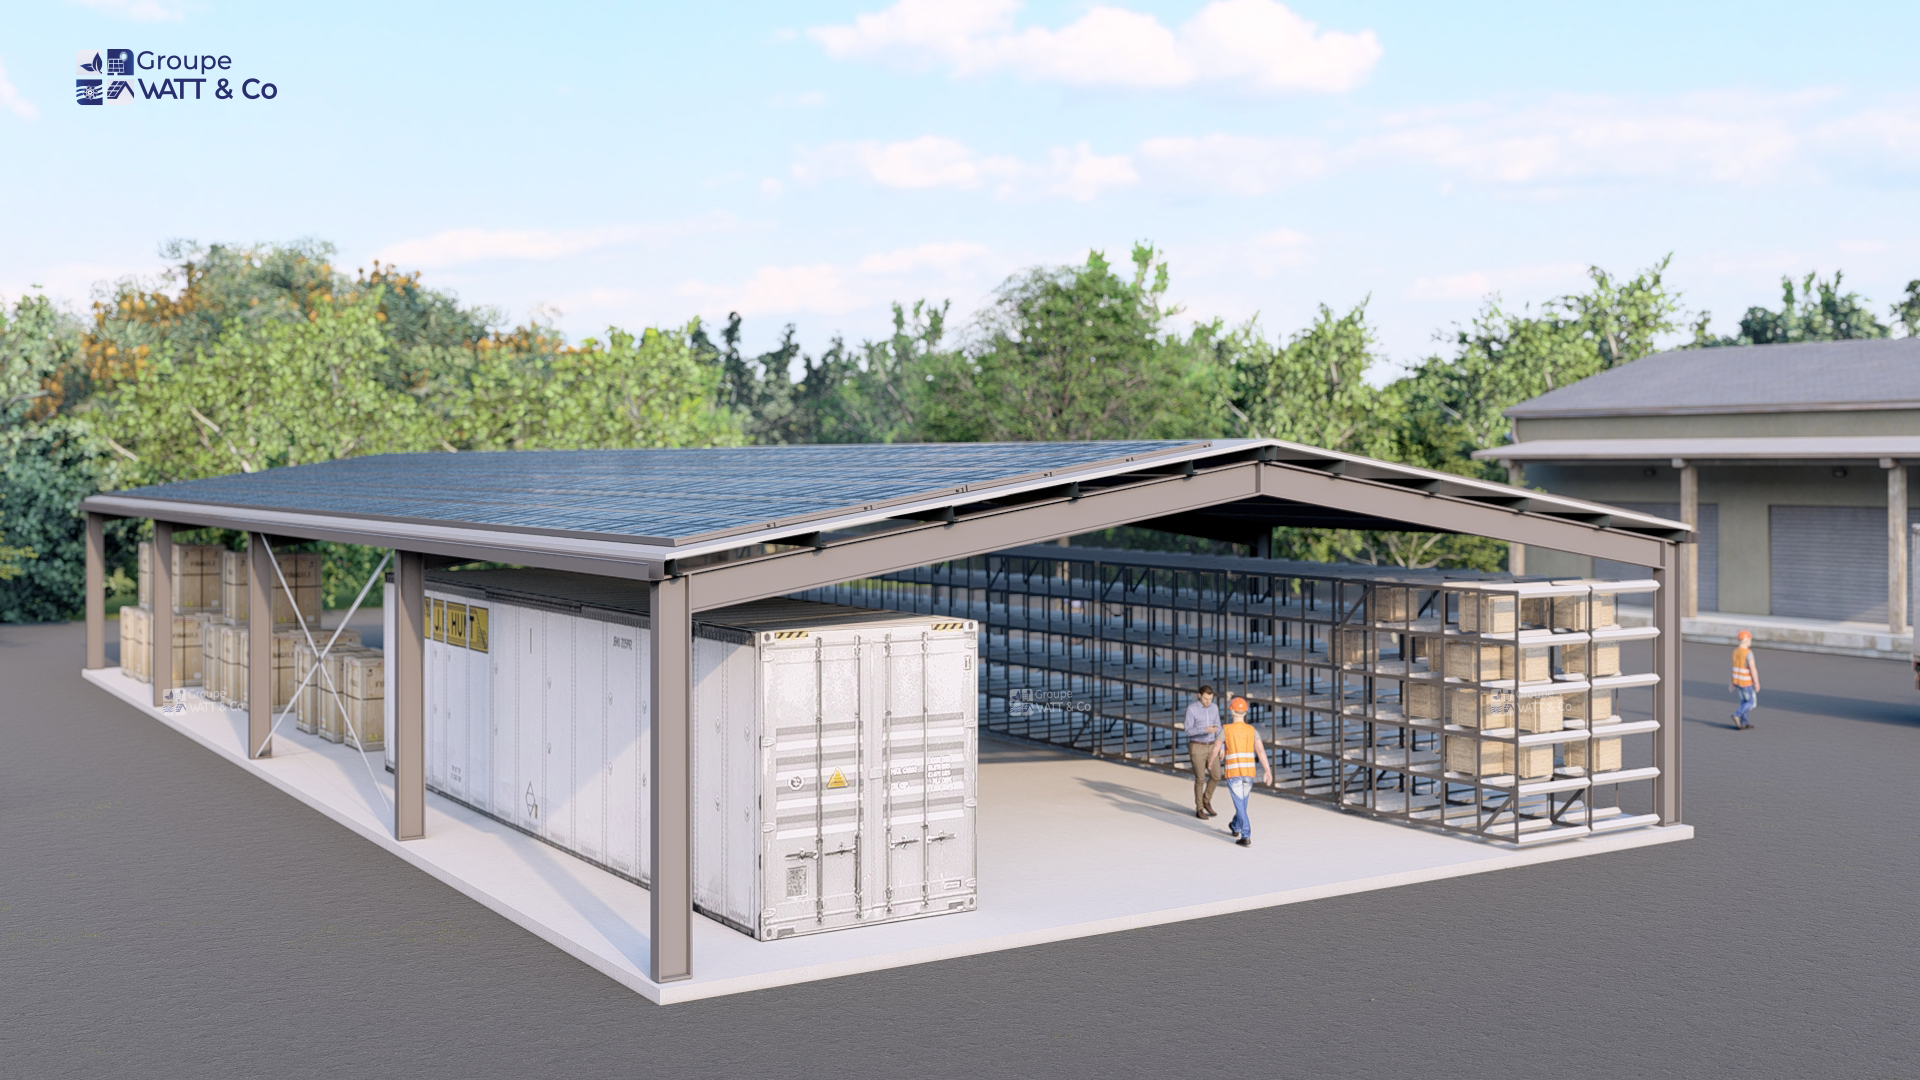 Bâtiment photovoltaïque financé de 495 m²